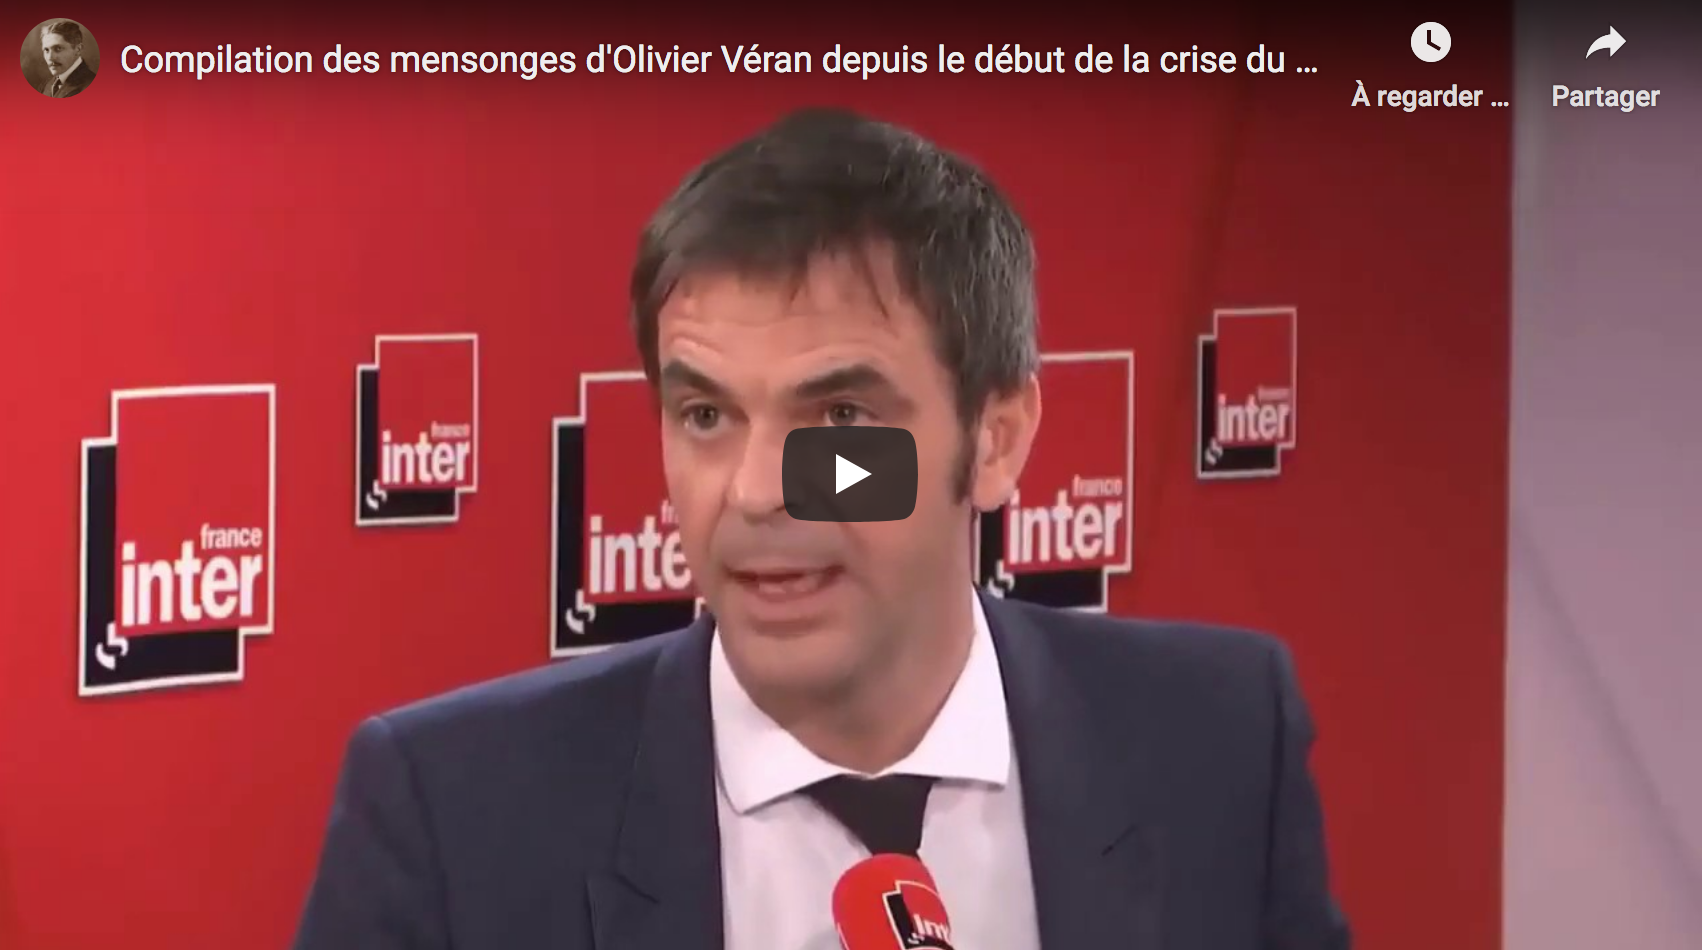 Regardez le menteur pathologique Olivier Véran promettre que le passeport sanitaire ne sera pas obligatoire pour prendre le train ou aller au restaurant (VIDÉO)